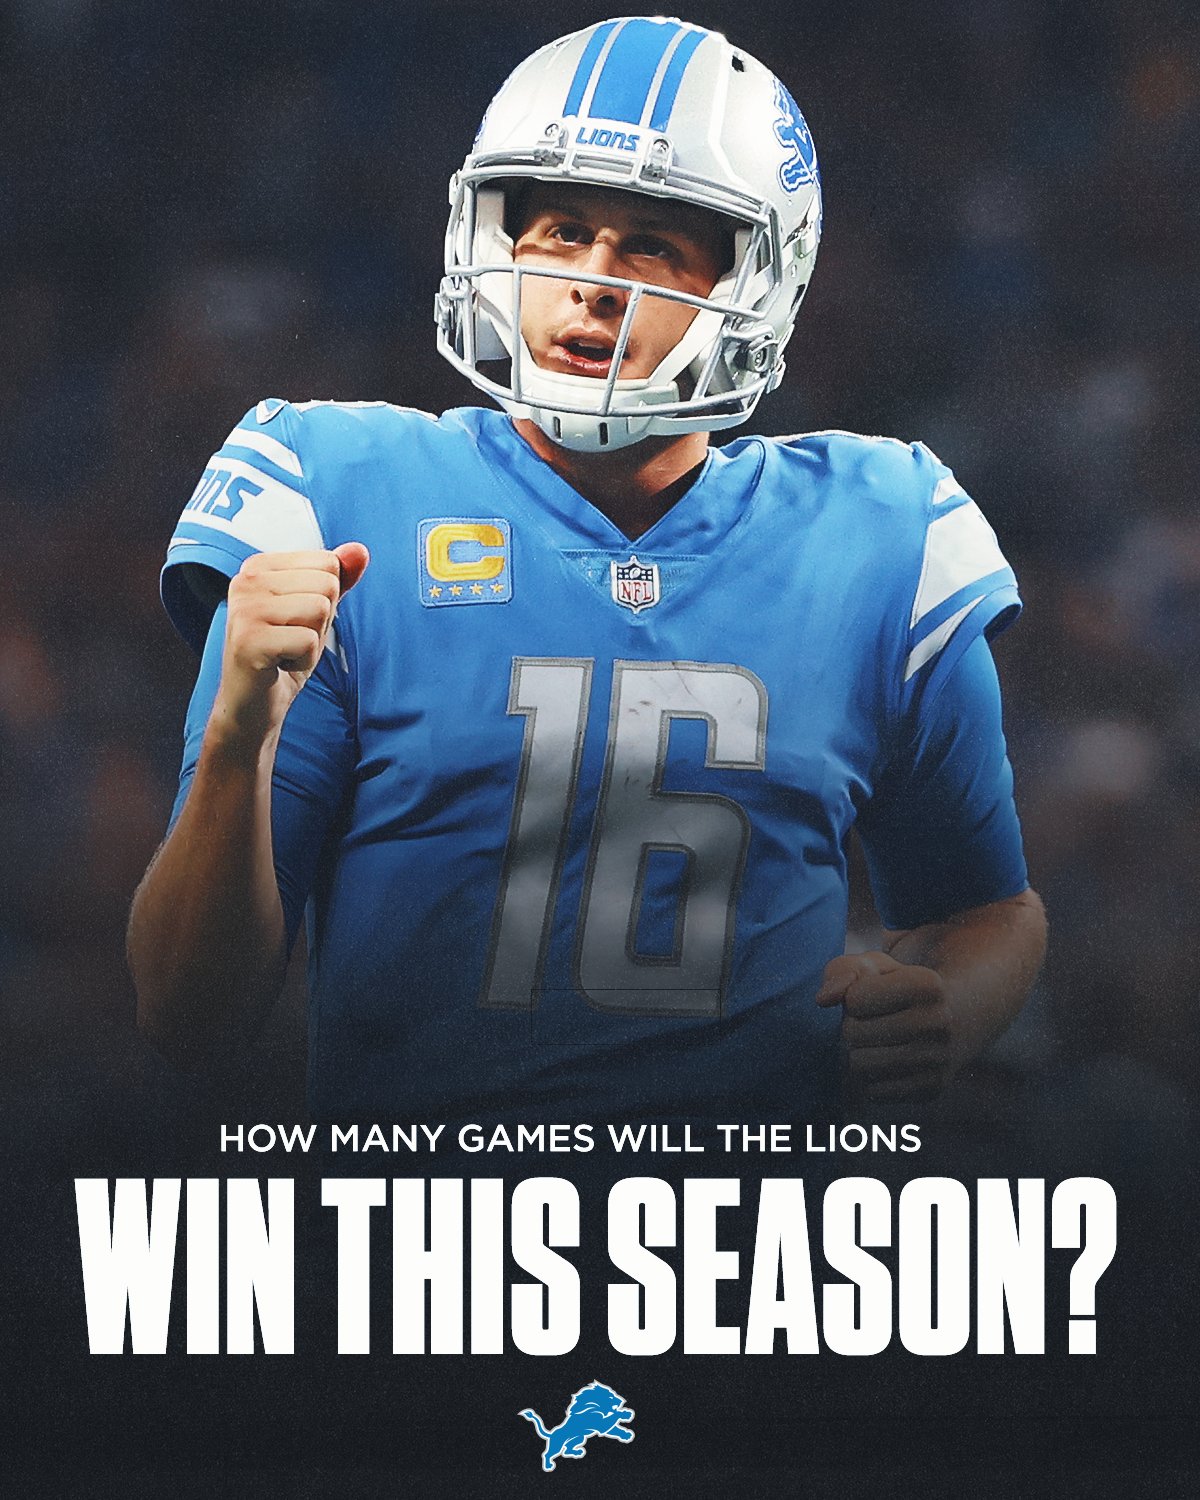 lions games this season